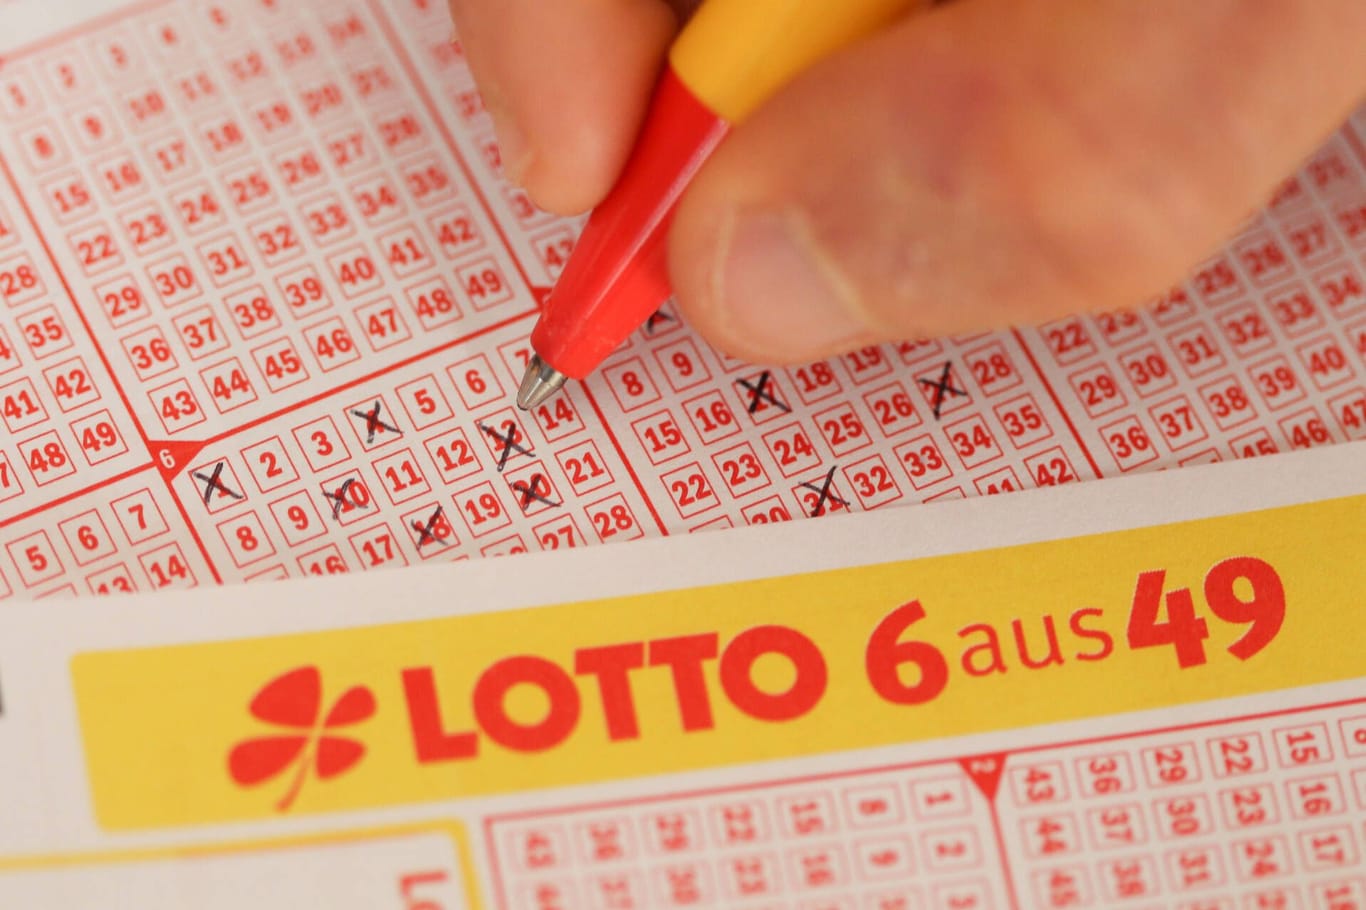 Ein Lottoschein (Archivbild): In Magdeburg hat ein Paar zehn Millionen Euro gewonnen.